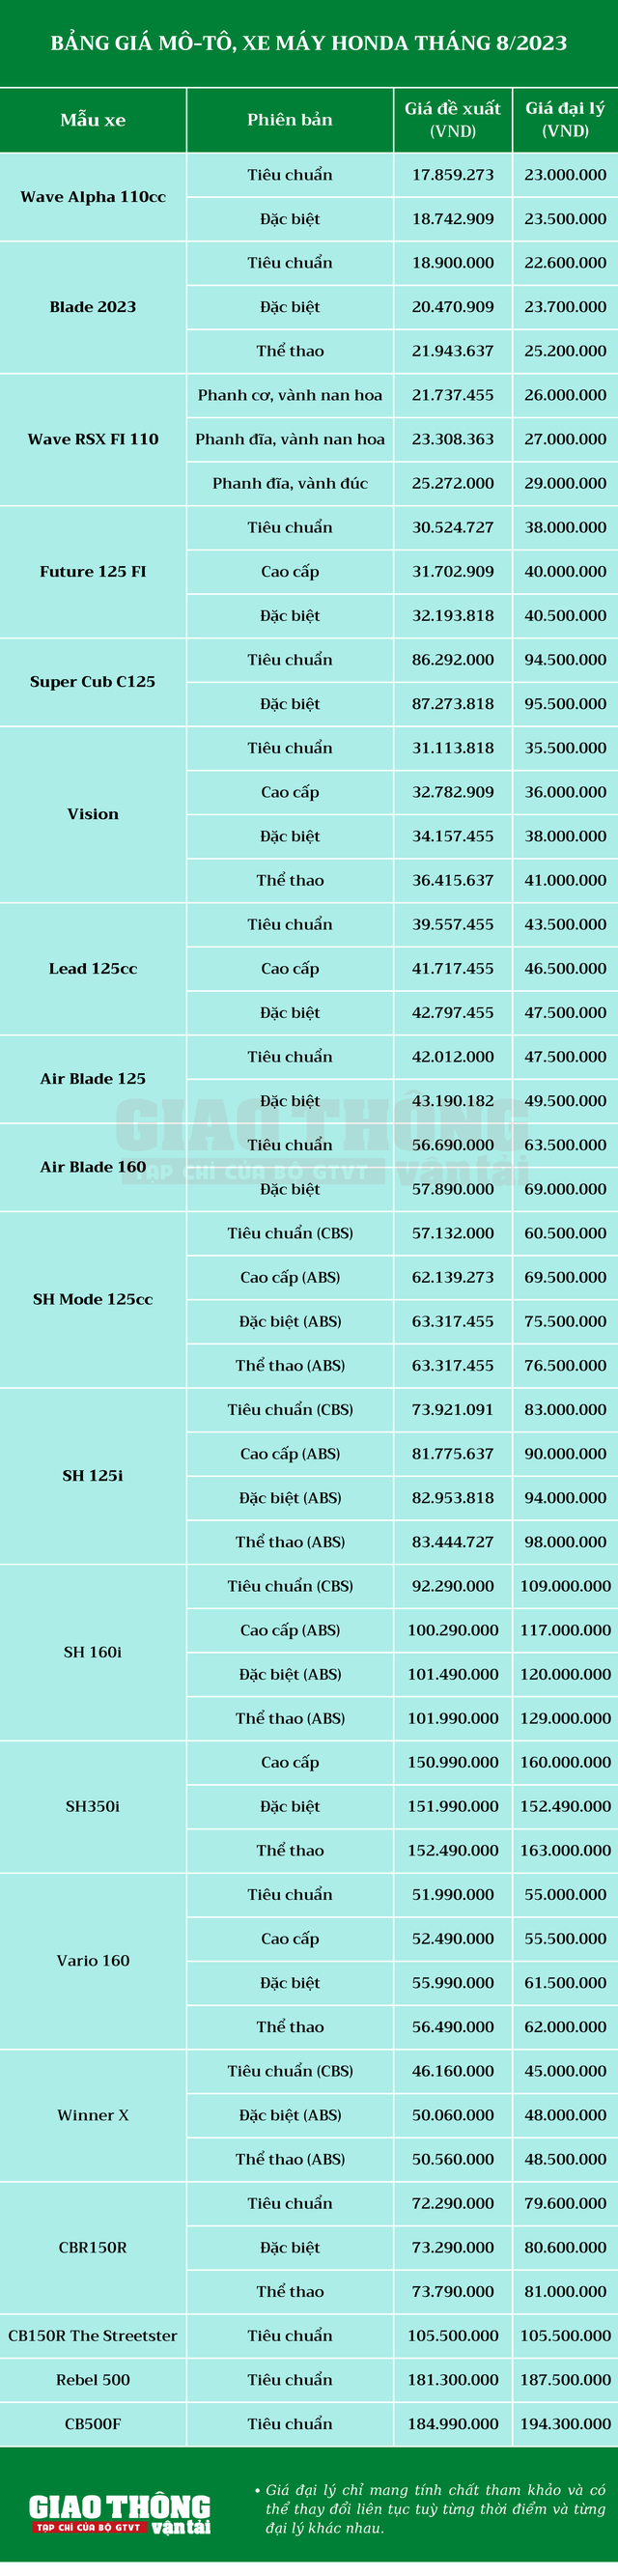 Bảng giá đề xuất, giá đại lý mô tô, xe máy Honda tháng 8/2023 - Ảnh 2.